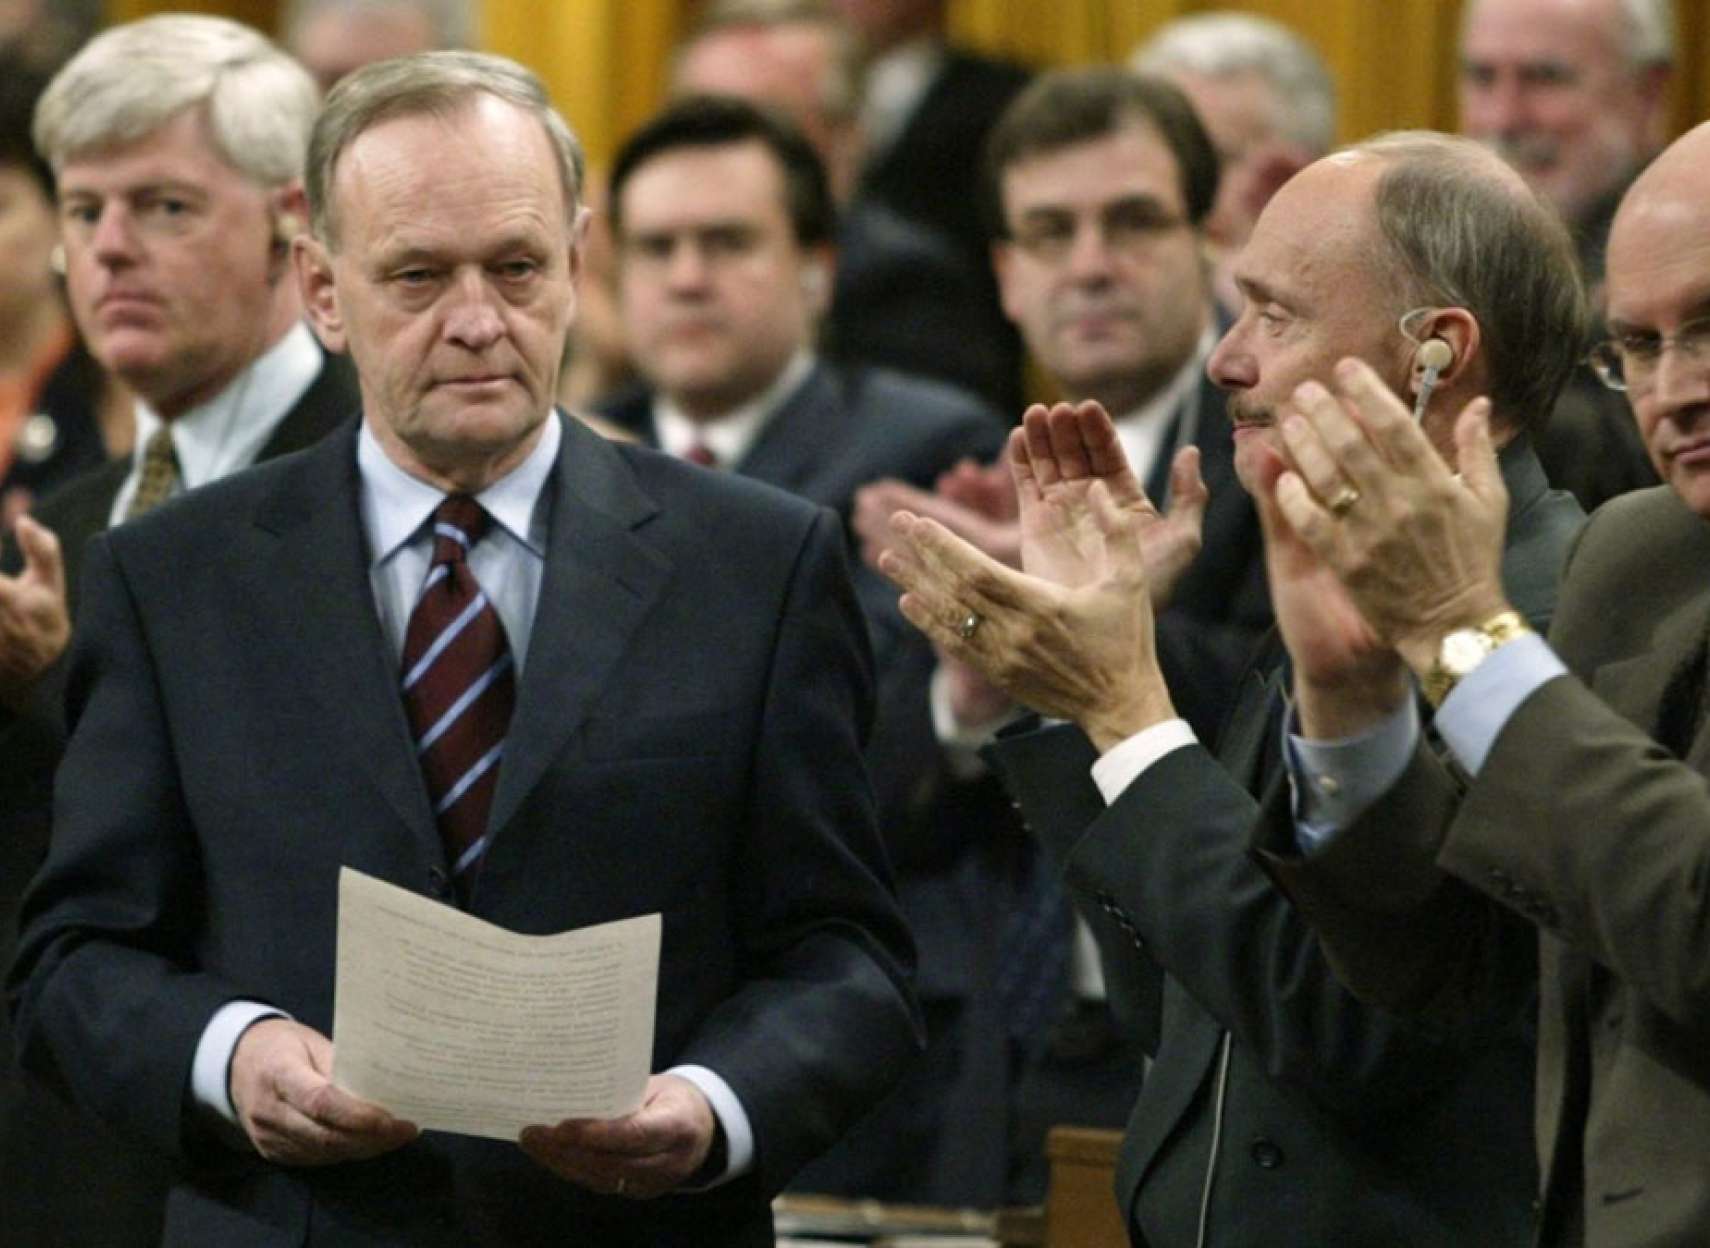 ژان-کرتین-نخست-وزیر-سابق-کانادا-جنگ-عراق-نبردم-مجلس-تبدیل-به-جهنم-کسل-کننده-شده